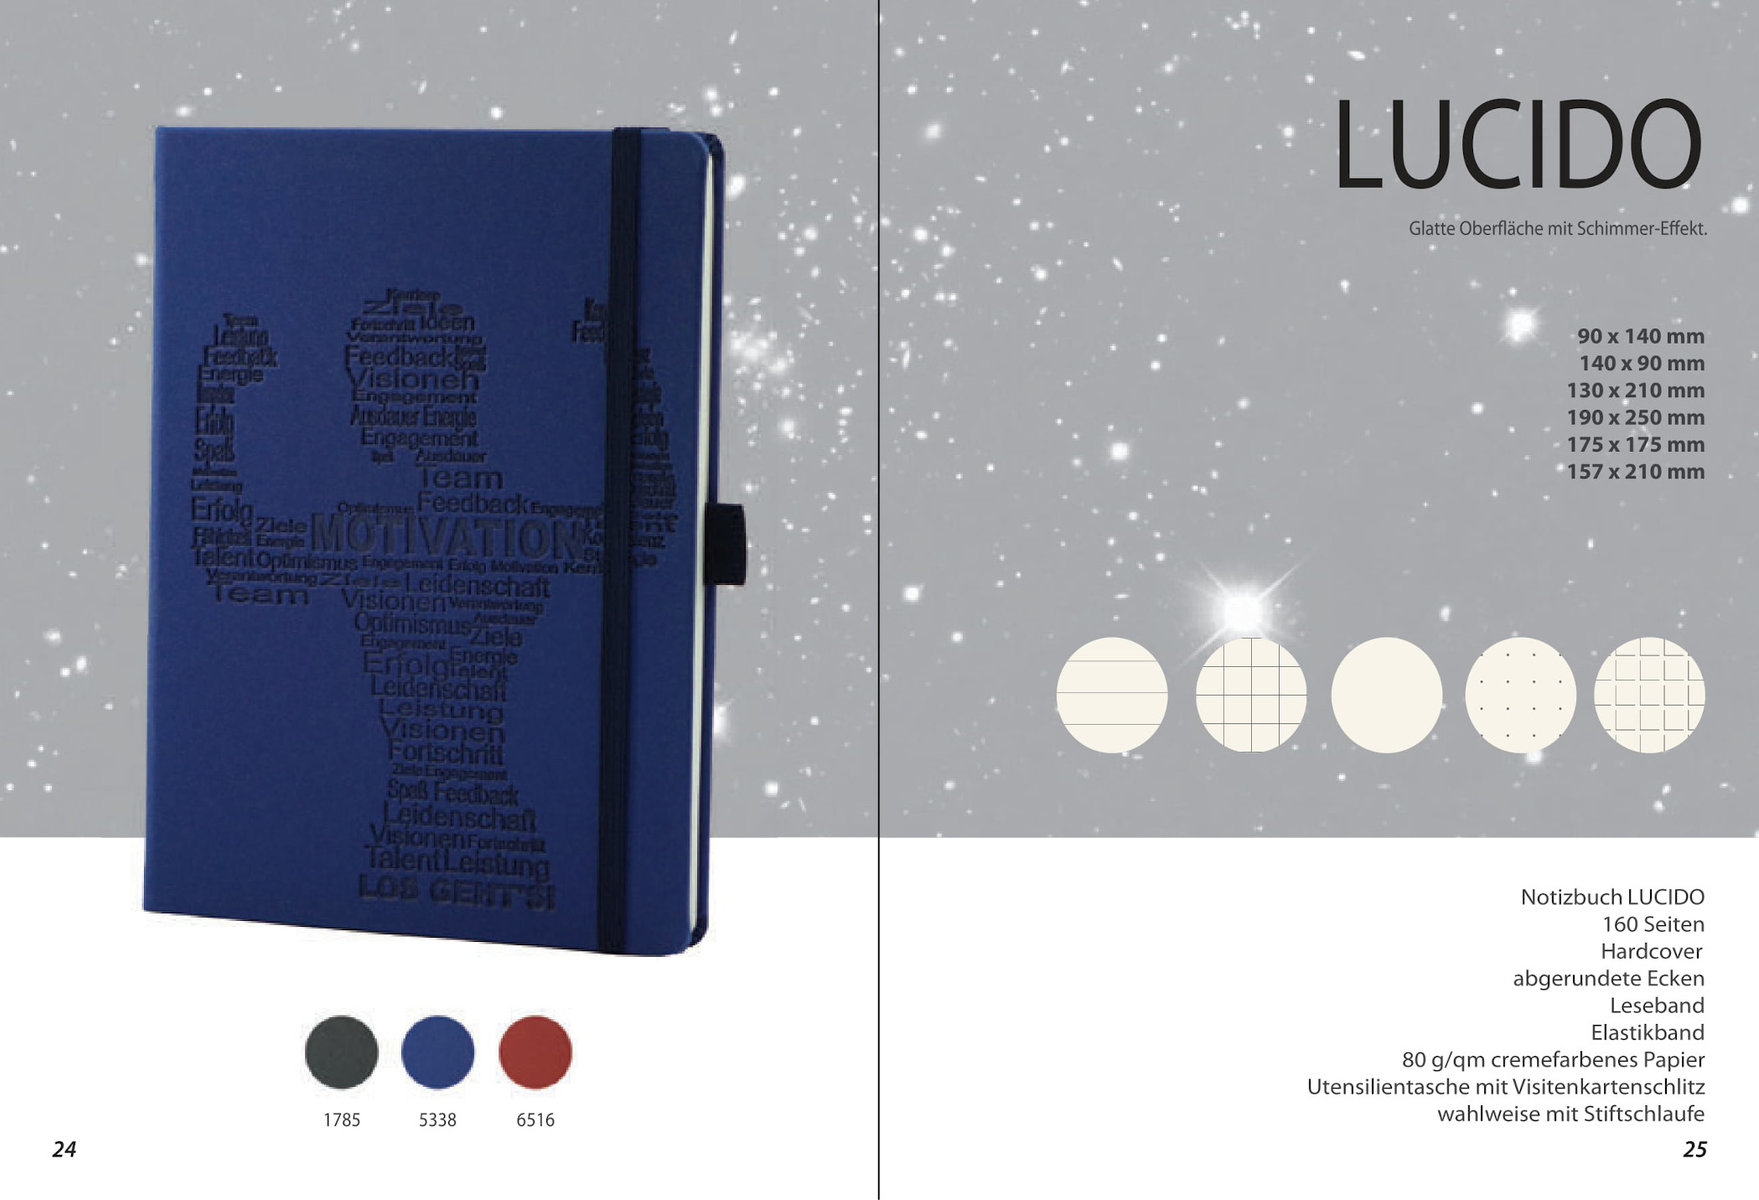 Notizbuch „Lucido“ von MinT Products